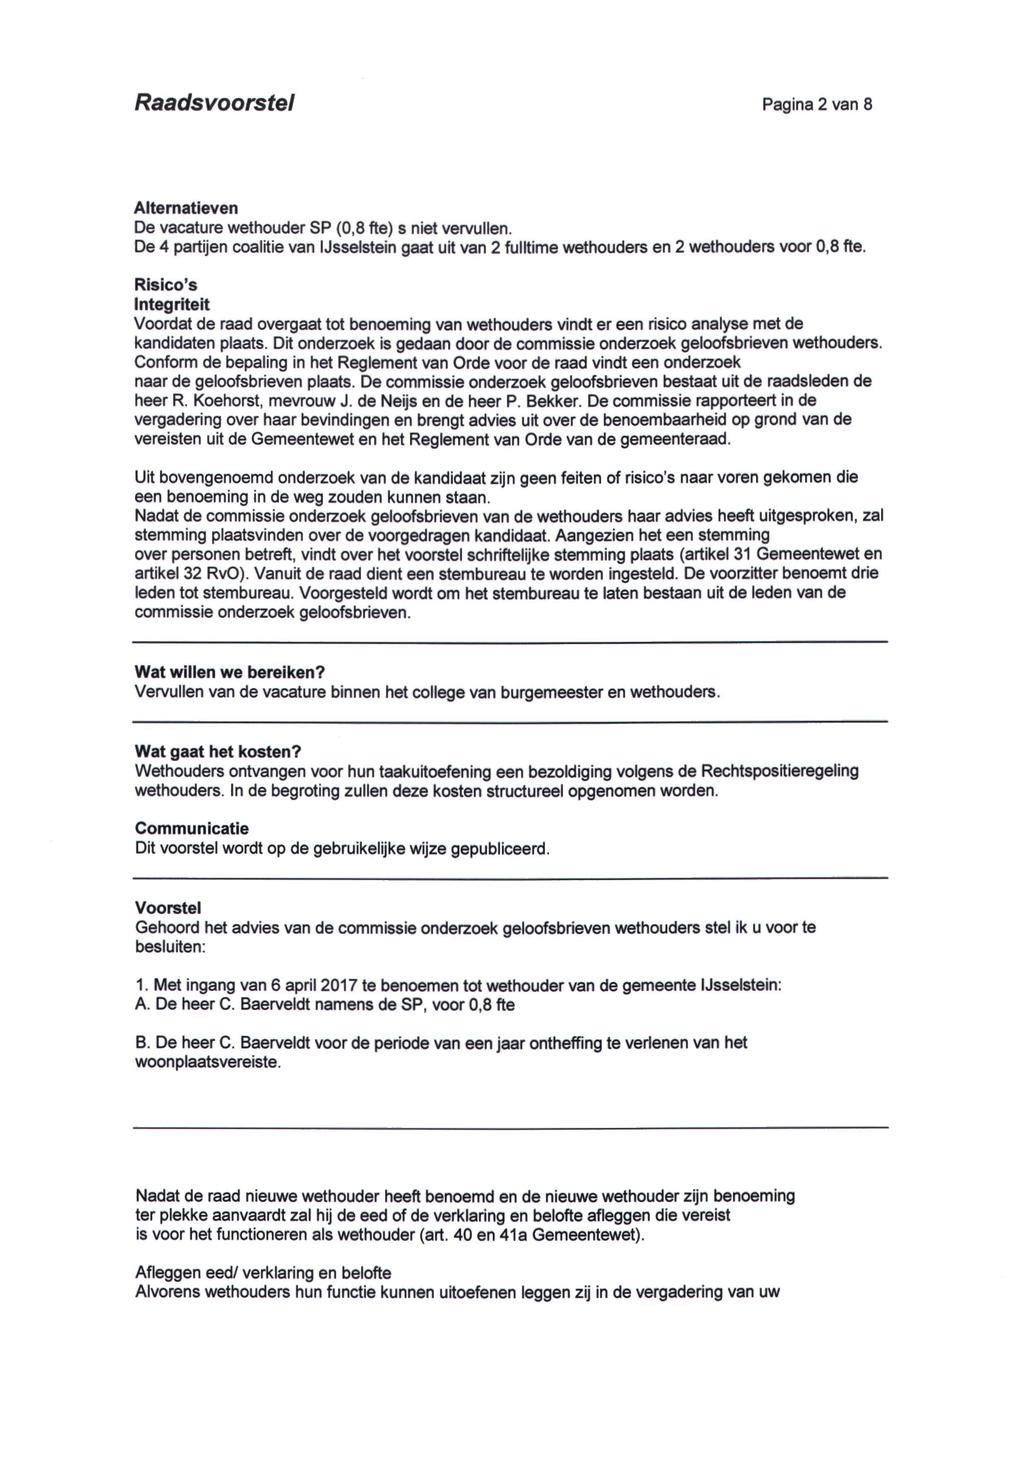 Raadsvoorstel Pagina 2 van 8 Alternatieven De vacature wethouder SP (0,8 fte) s niet vervullen. De 4 partijen coalitie van IJsselstein gaat uit van 2 fulltime wethouders en 2 wethouders voor 0,8 fte.